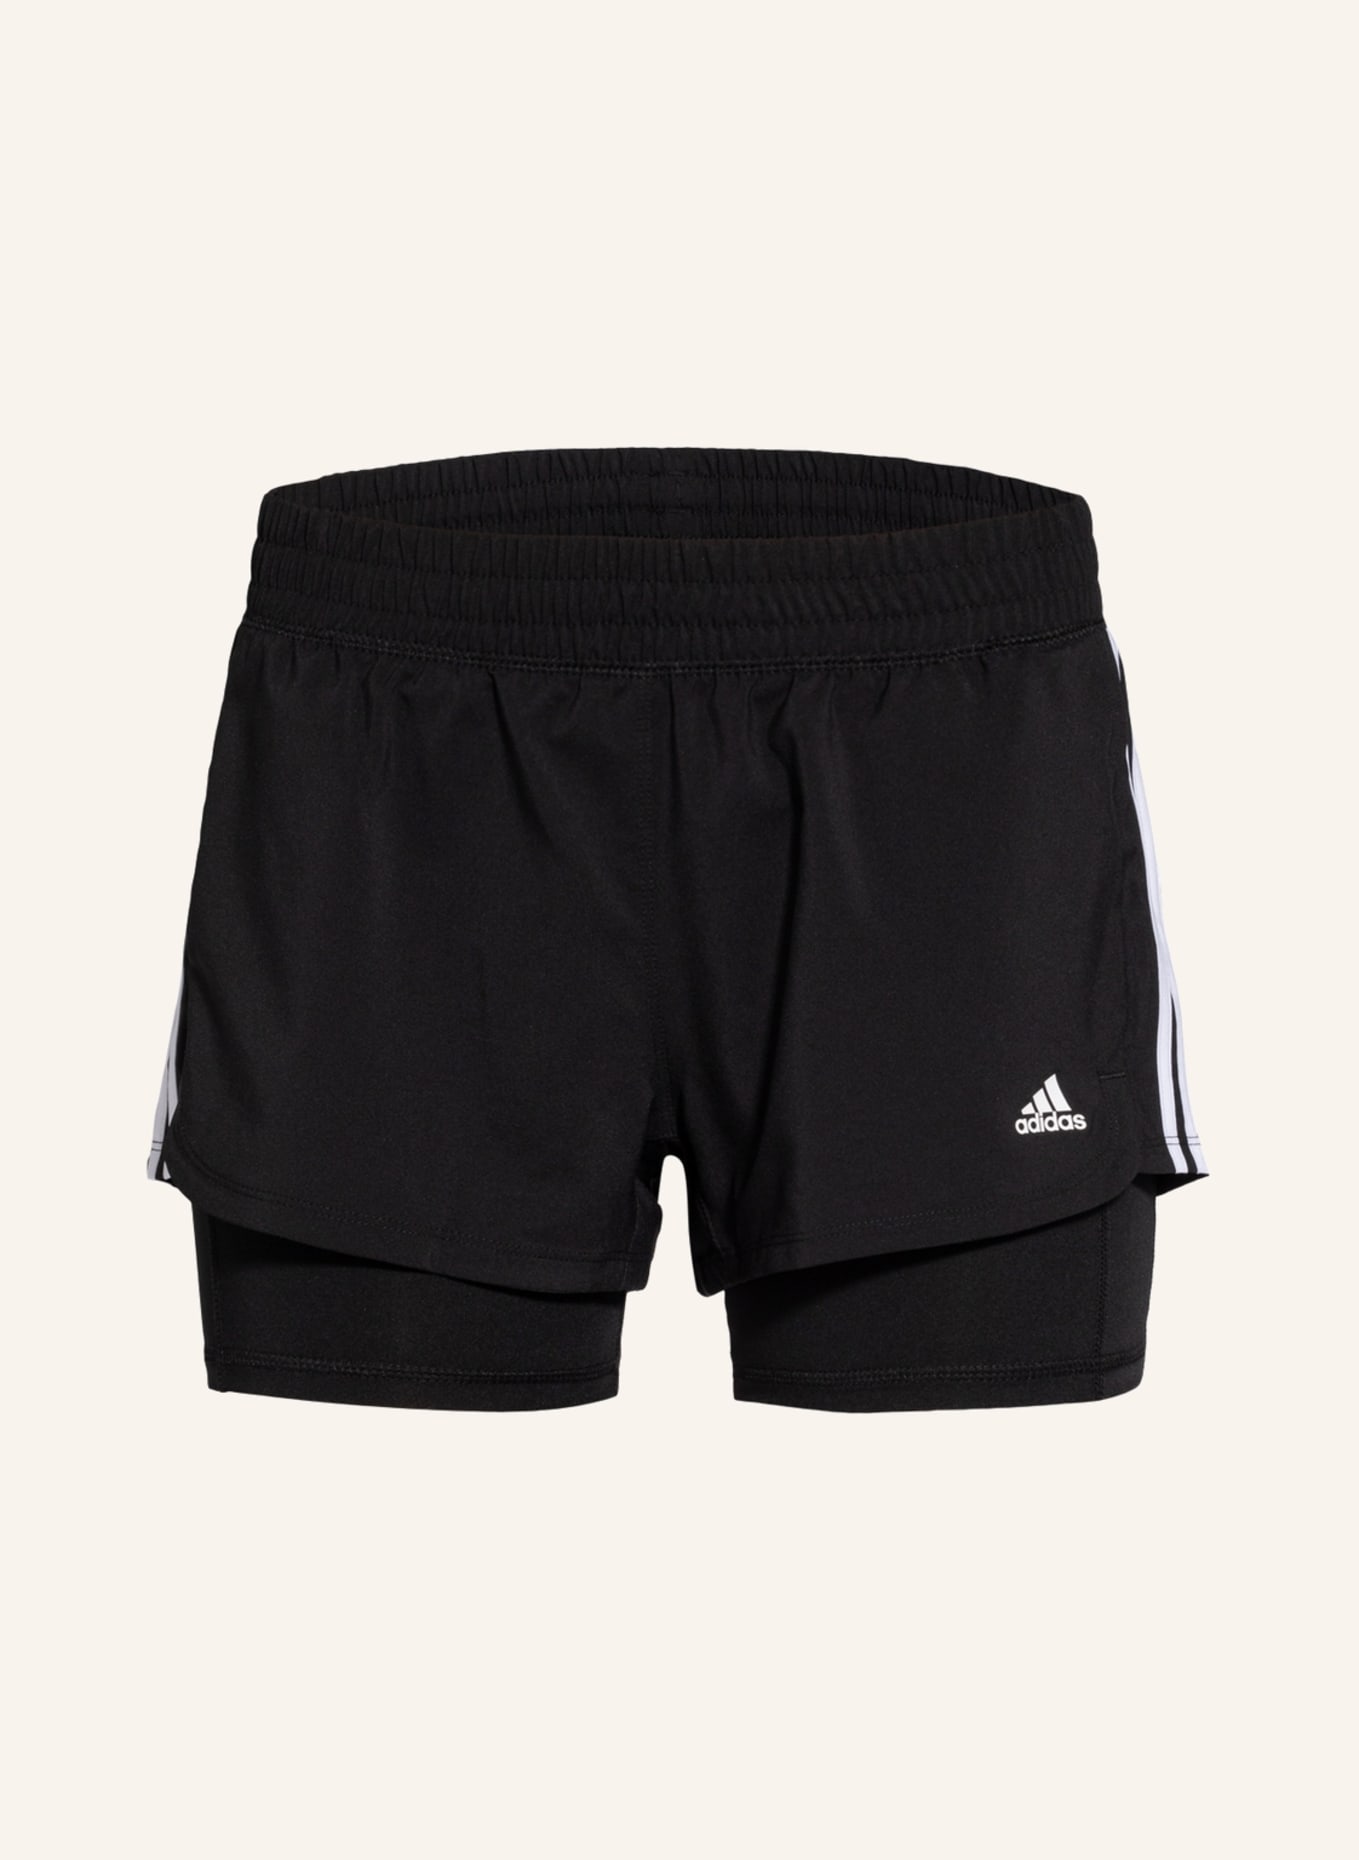 adidas 2-in-1-Shorts PACER, Farbe: SCHWARZ/ WEISS (Bild 1)